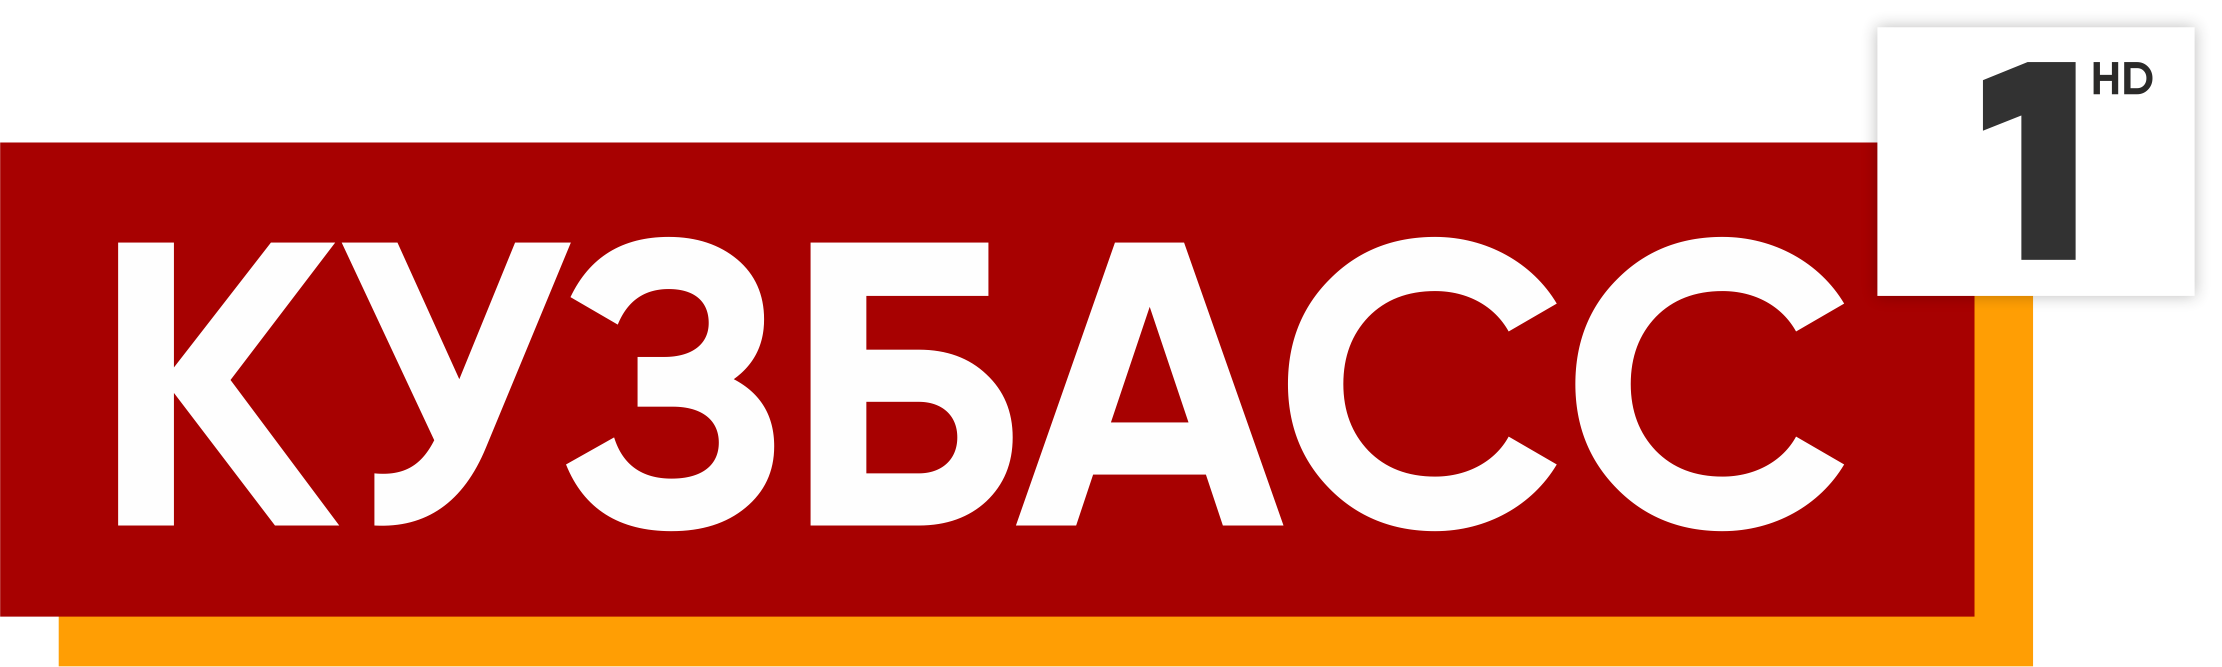 Телеканал Кузбасс 1. Кузбасс первый логотип. Логотипы телеканалов. Кузбасс 1 TV logo. Первый канал кемерово прямой